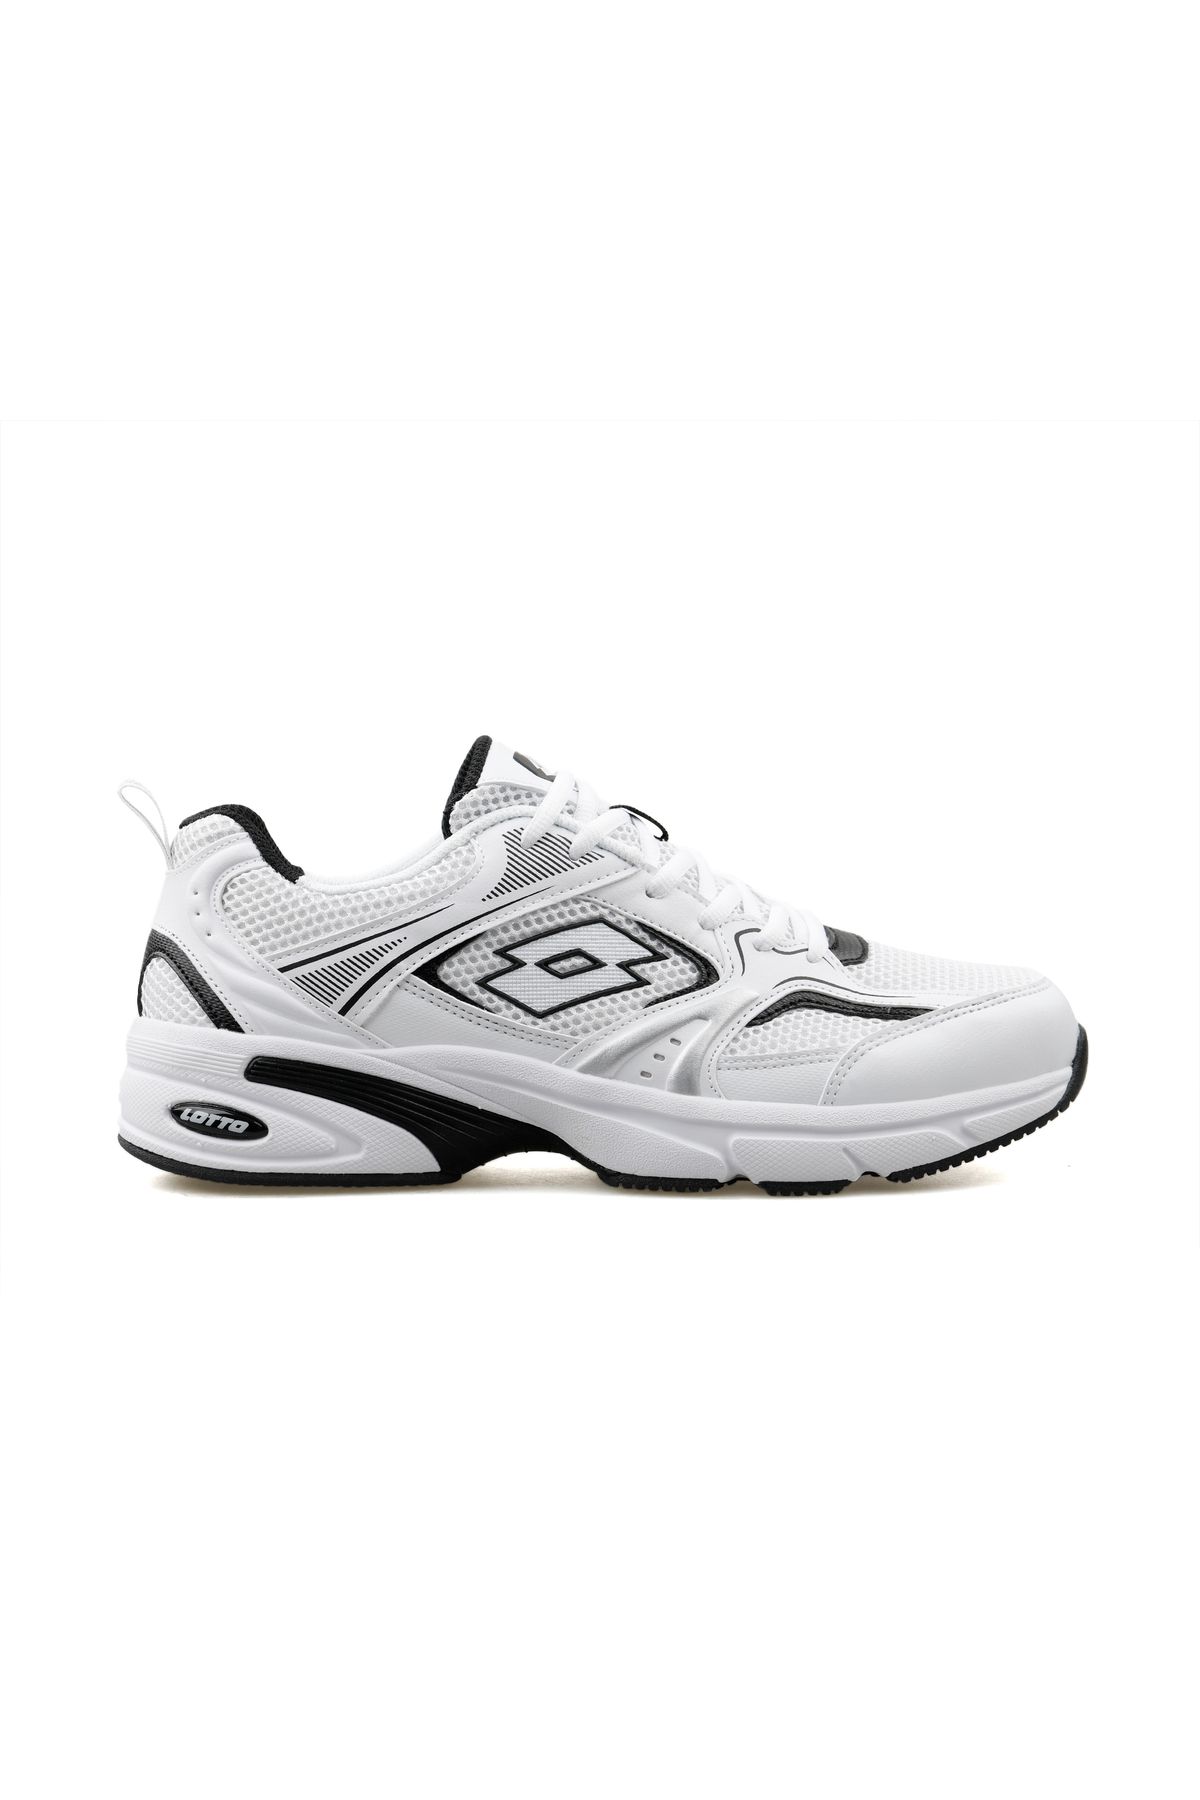 Lotto Athens 4FX Günlük Koşu Spor Ayakkabı Sneaker Beyaz